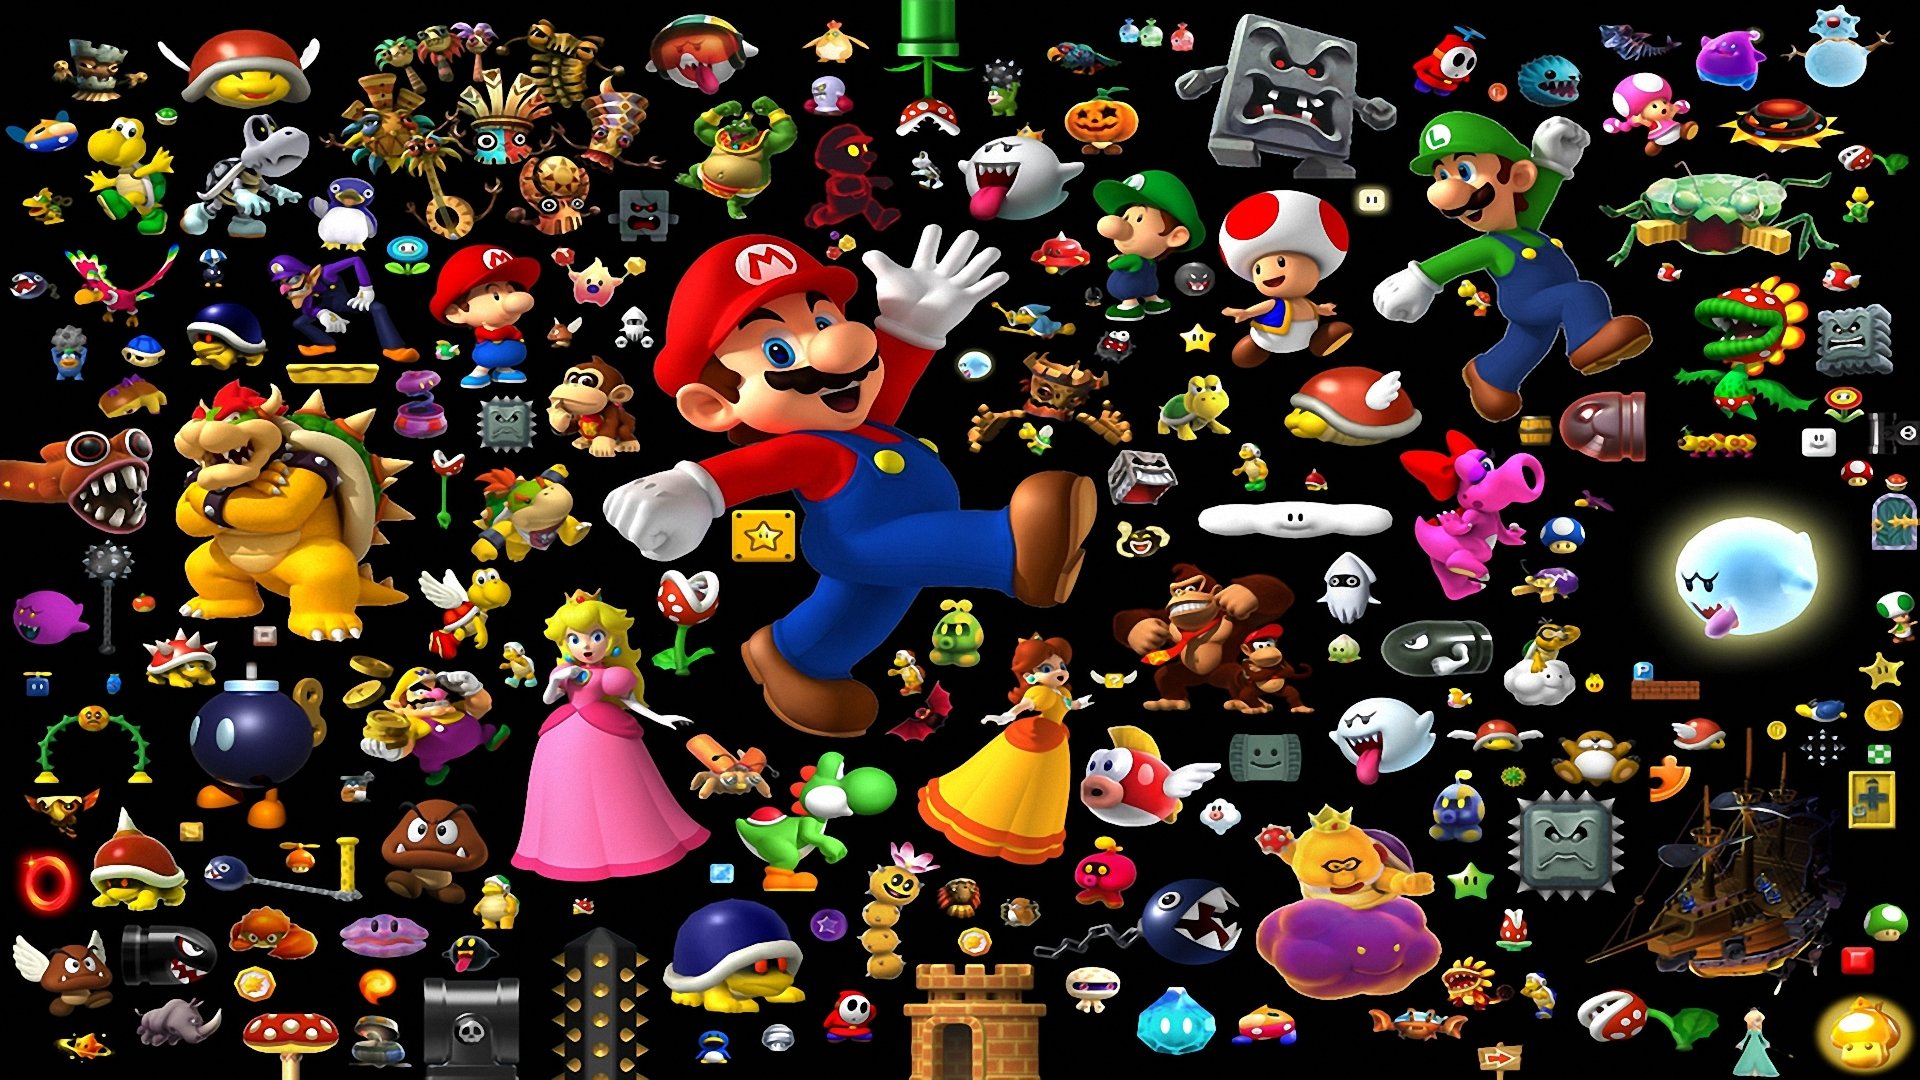 Super Mario All Stars + Super Mario World HD Wallpaper And Background